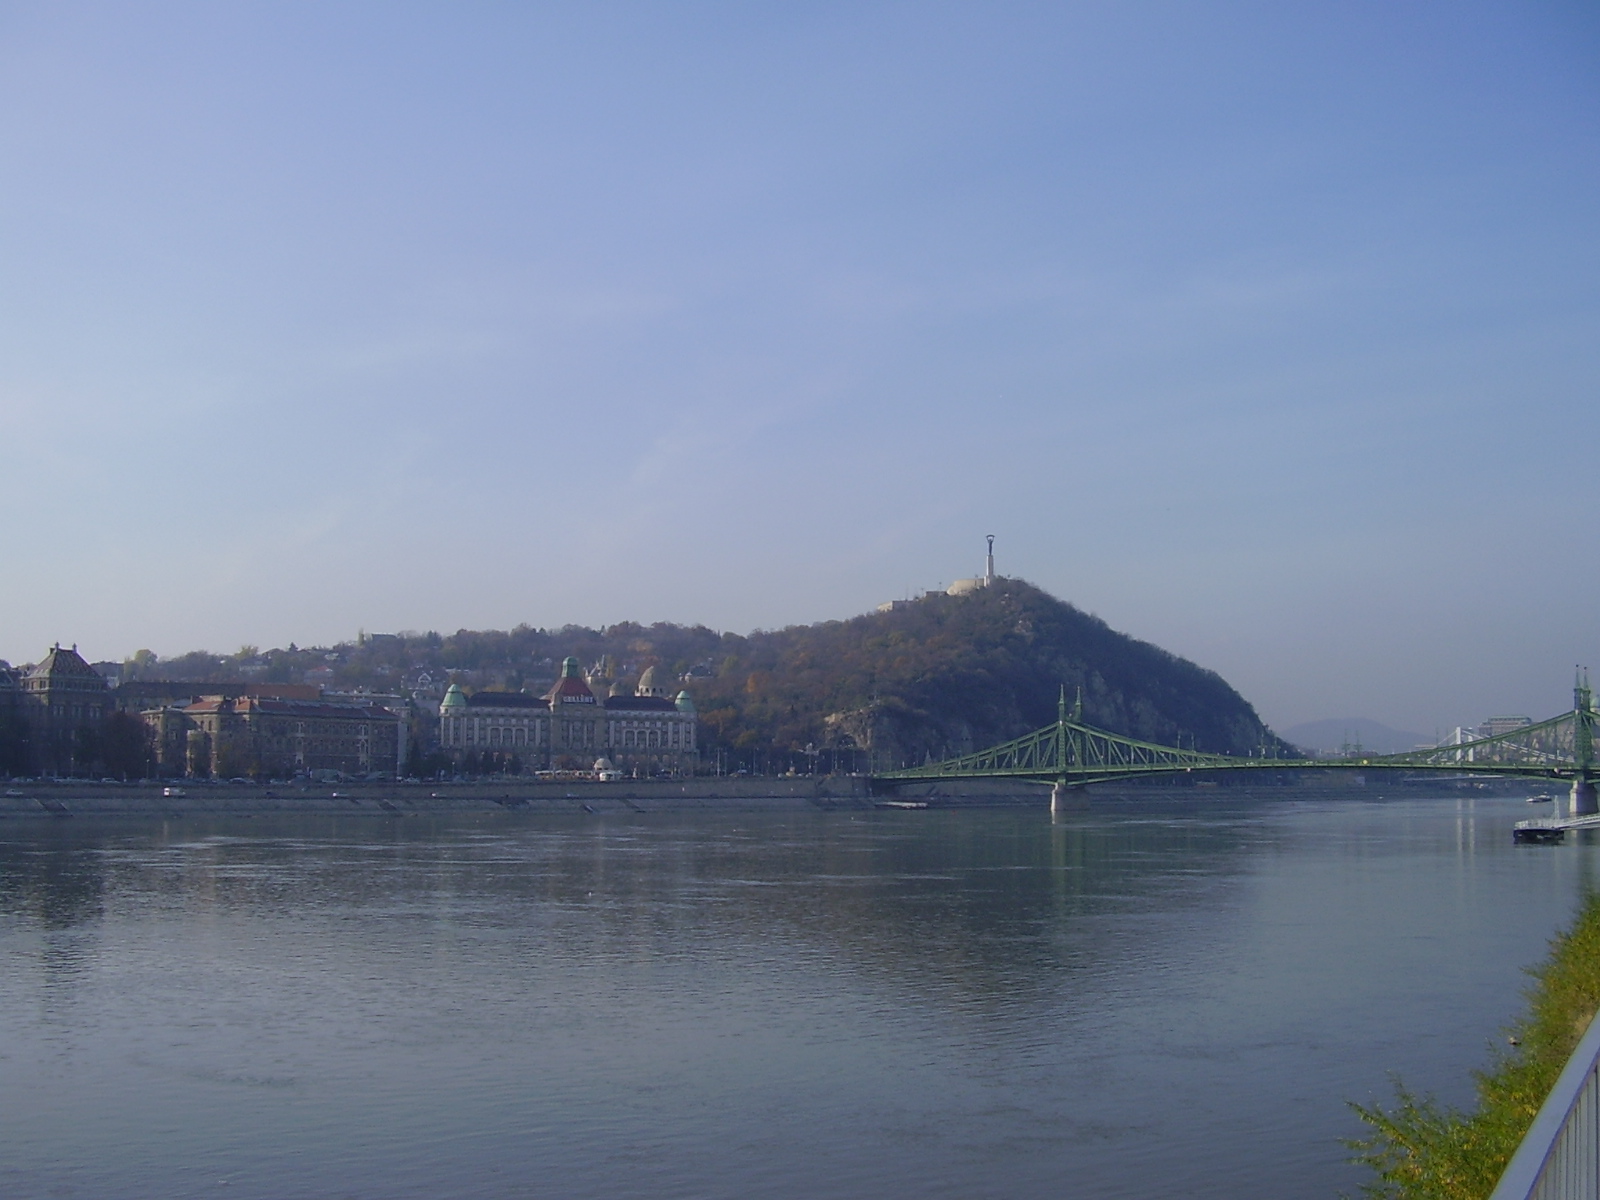 Fedezzük fel Budapestet! (1)